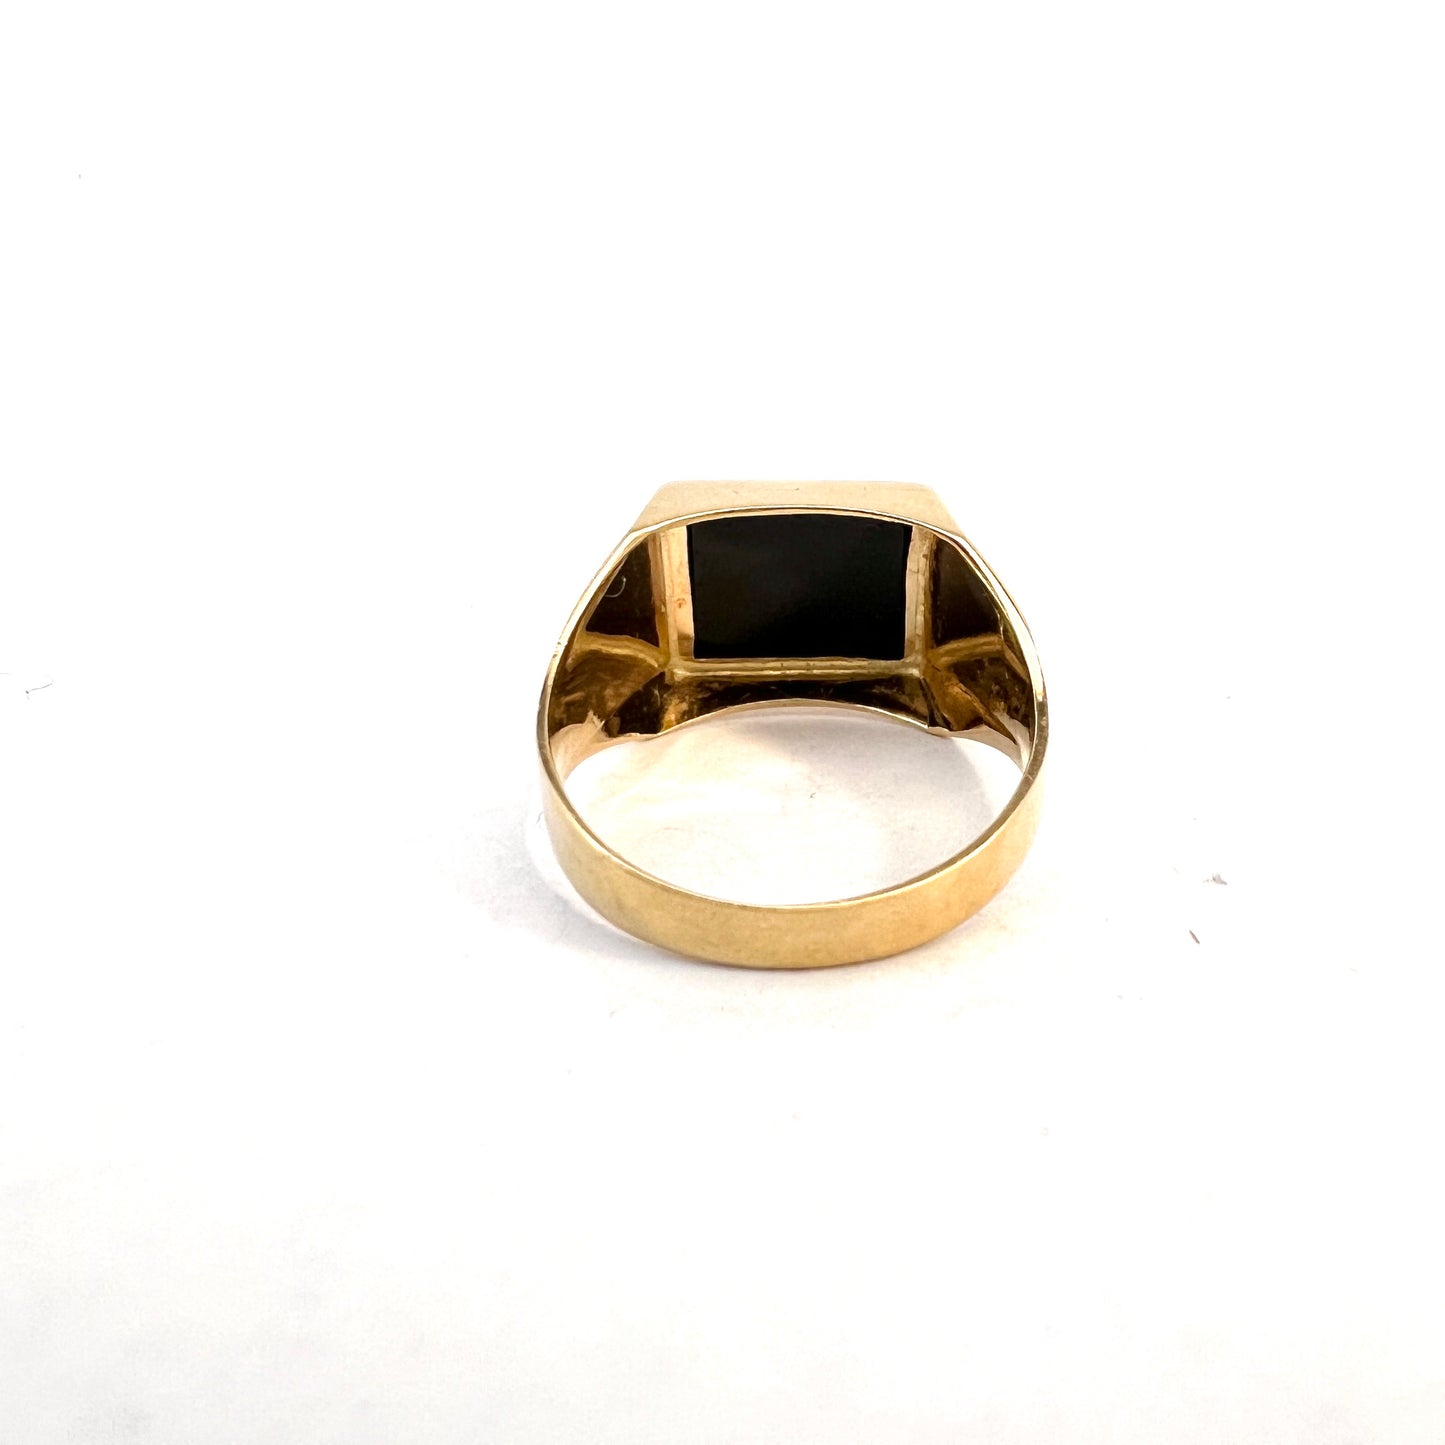 Kaplan, Sweden 1966. Vintage 18k Gold Onyx Signet Ring.